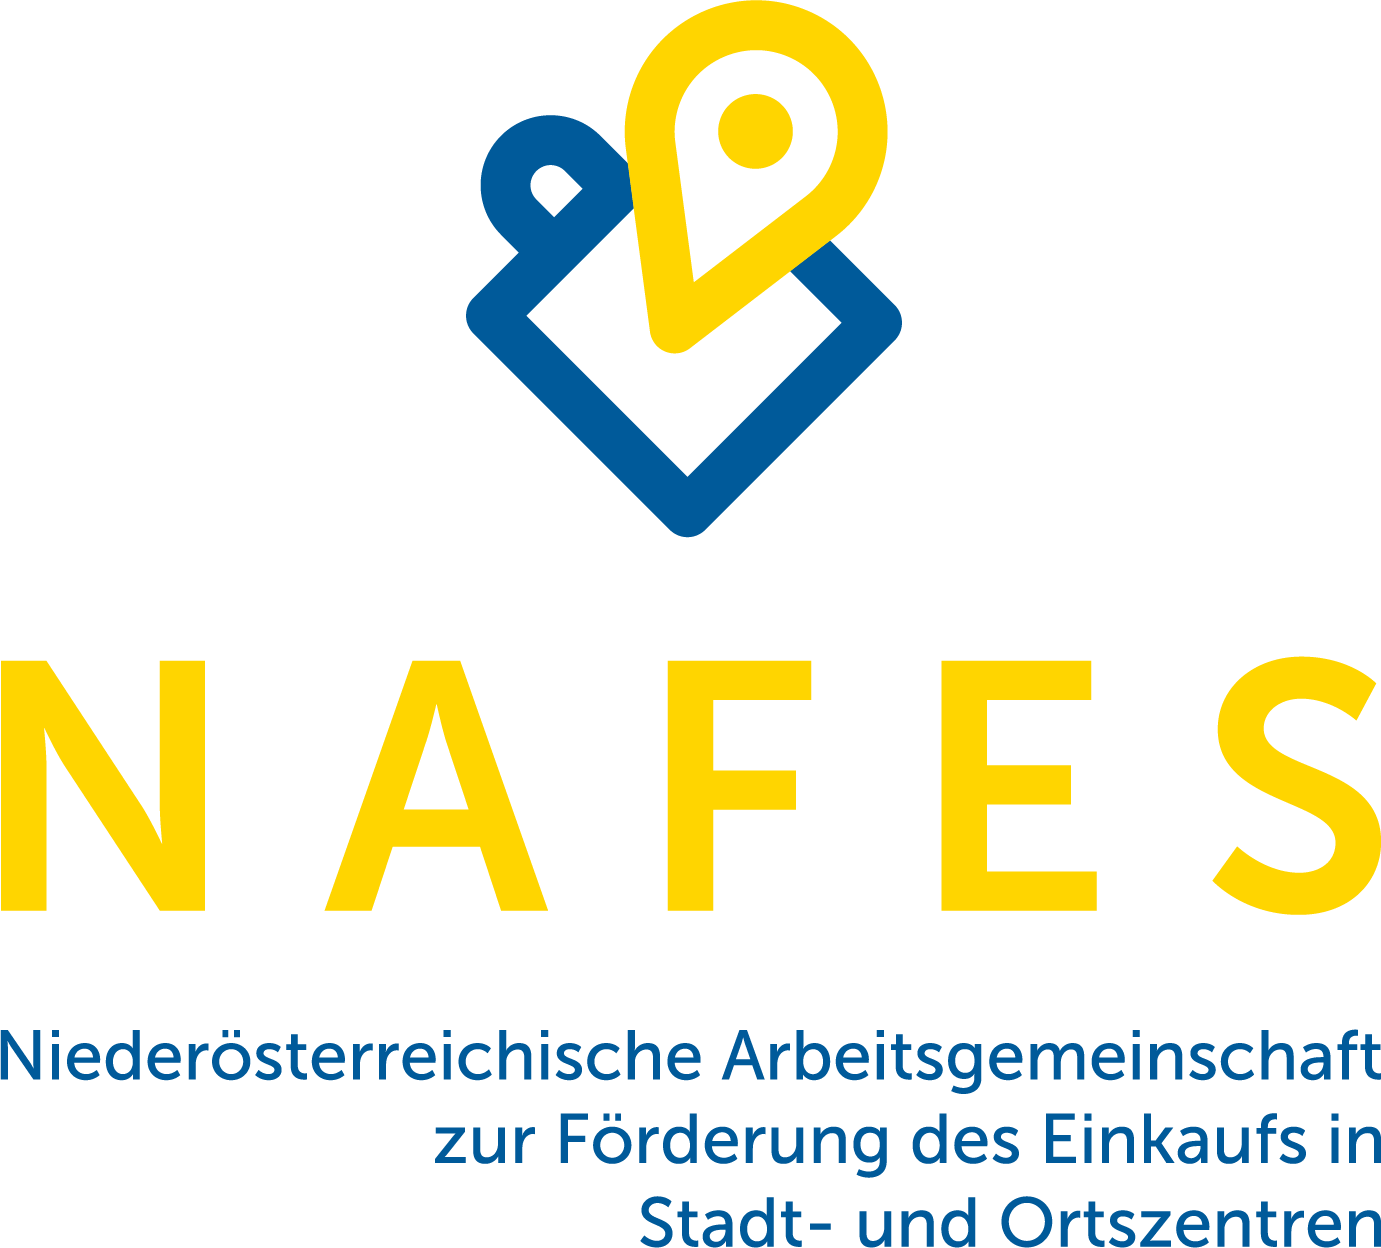 NAFES Niederösterreichische Arbeitsgemeinschaft zur Förderung des Einkaufs in Stadt- und Ortszentren